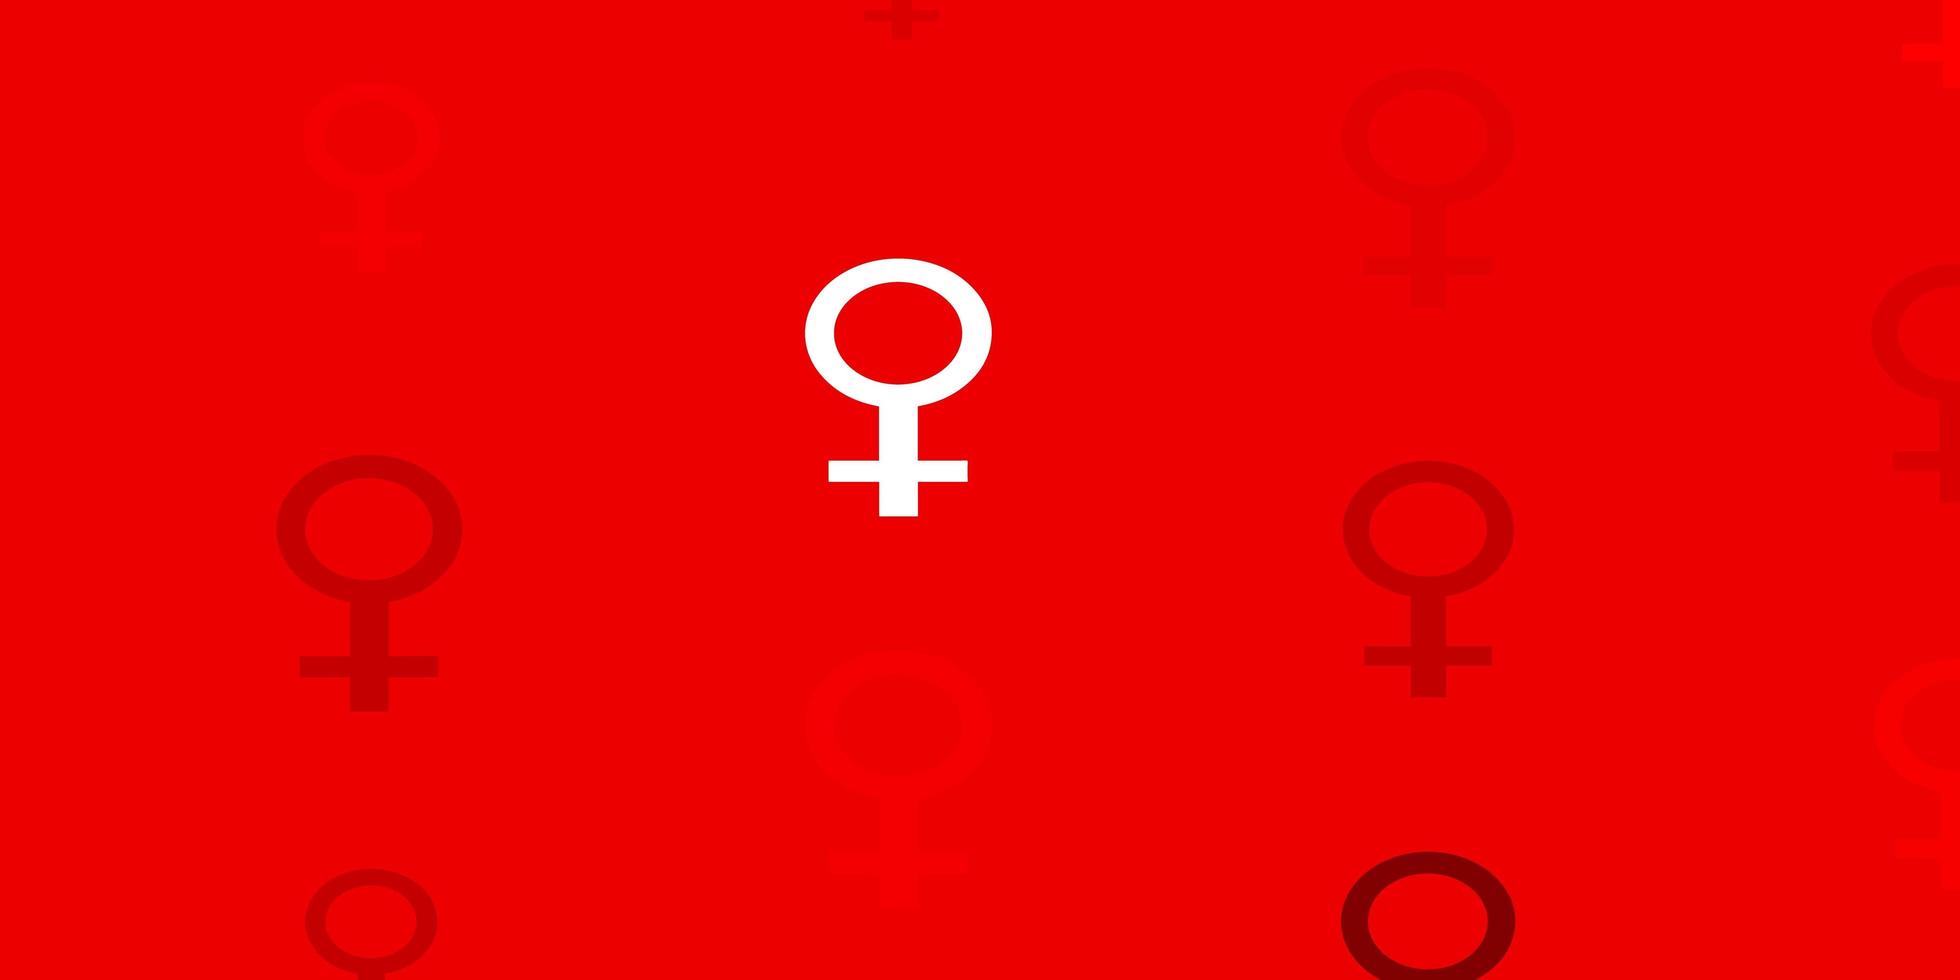 padrão de vetor vermelho claro com elementos do feminismo.